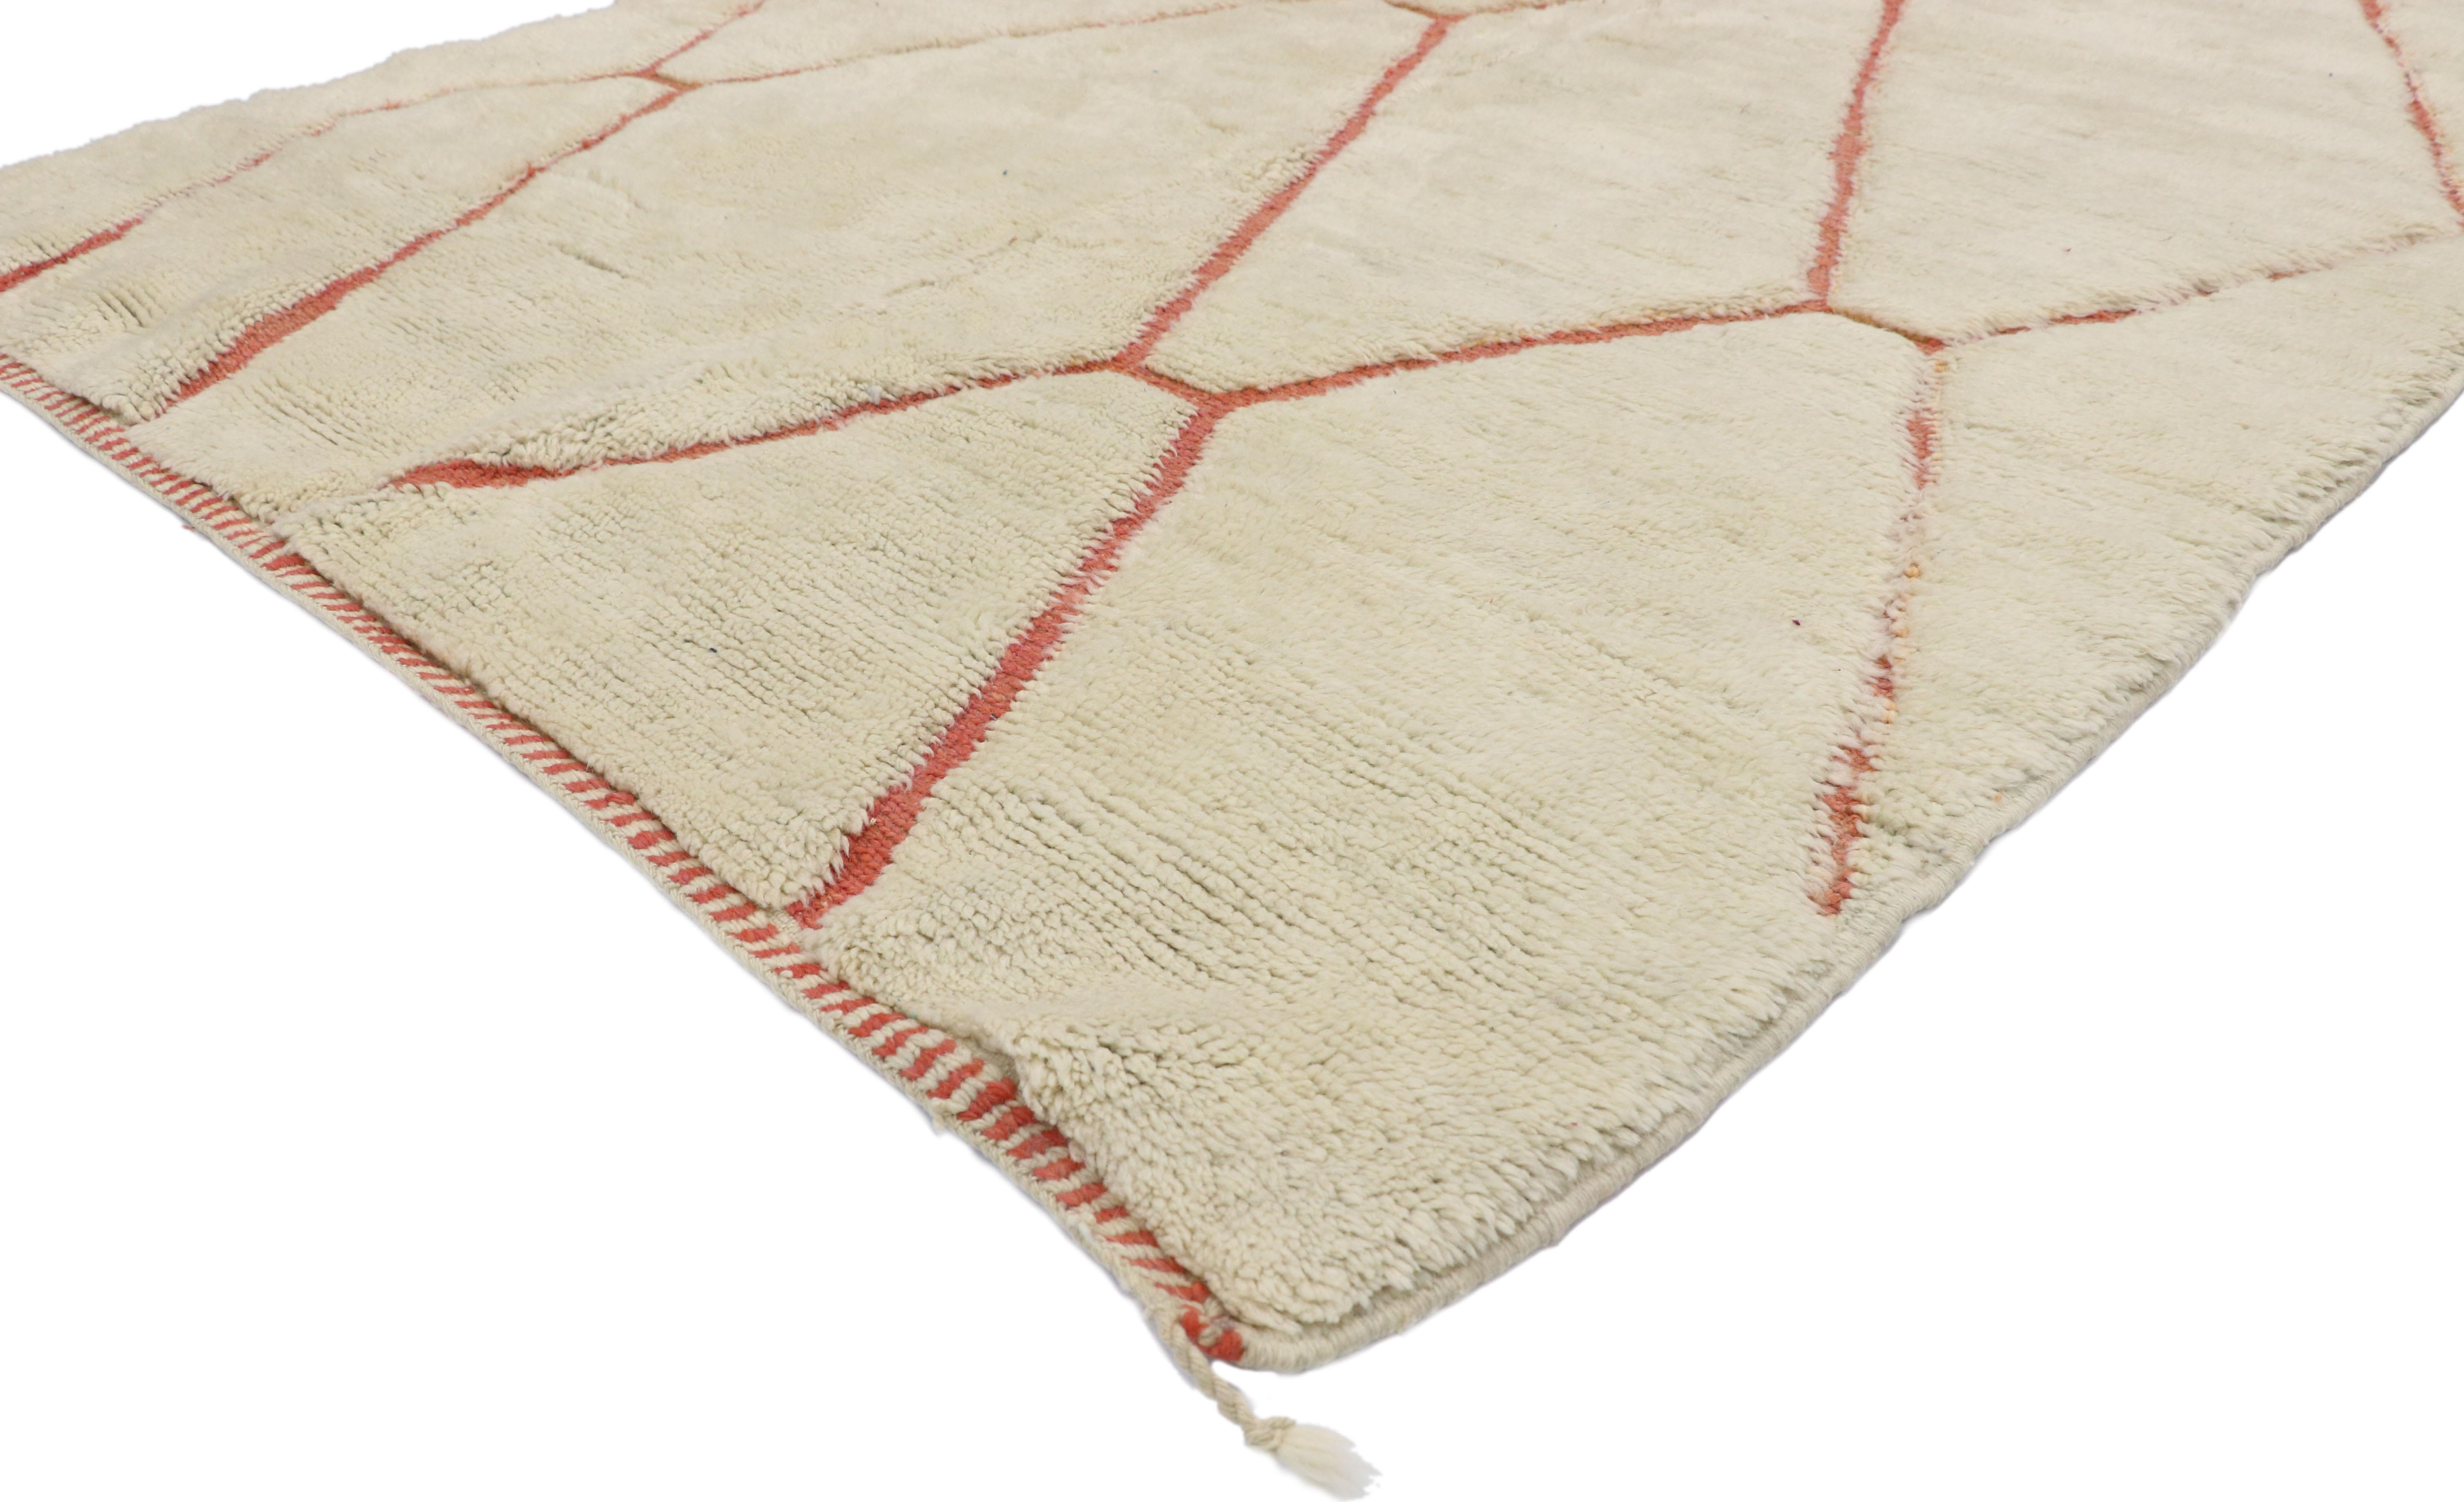 21035 Neuer zeitgenössischer marokkanischer Berberteppich mit gemütlichen Hygge-Vibes und organischem modernem Stil 05'05 x 07'02. Dieser moderne marokkanische Teppich aus handgeknüpfter Wolle zeichnet sich durch kontrastierende, weiche, rote Linien